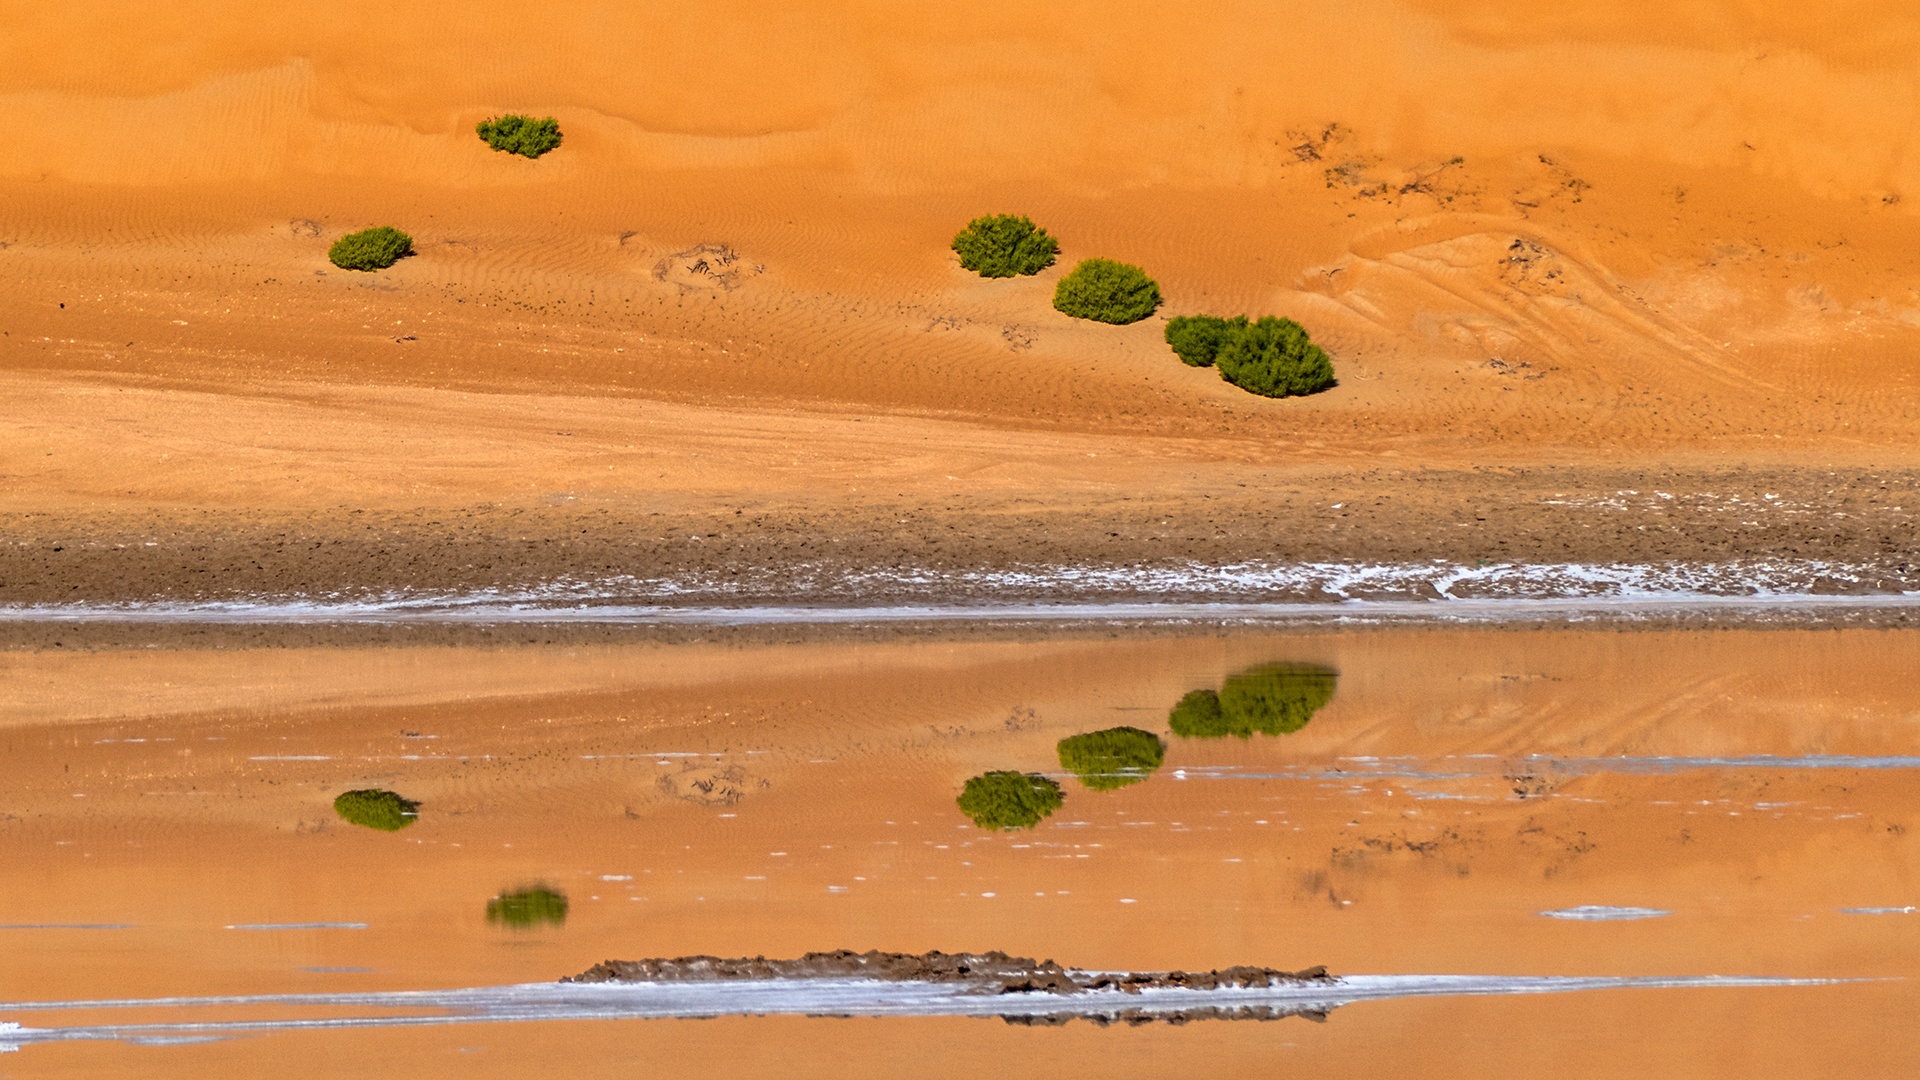 Reflection in Desert